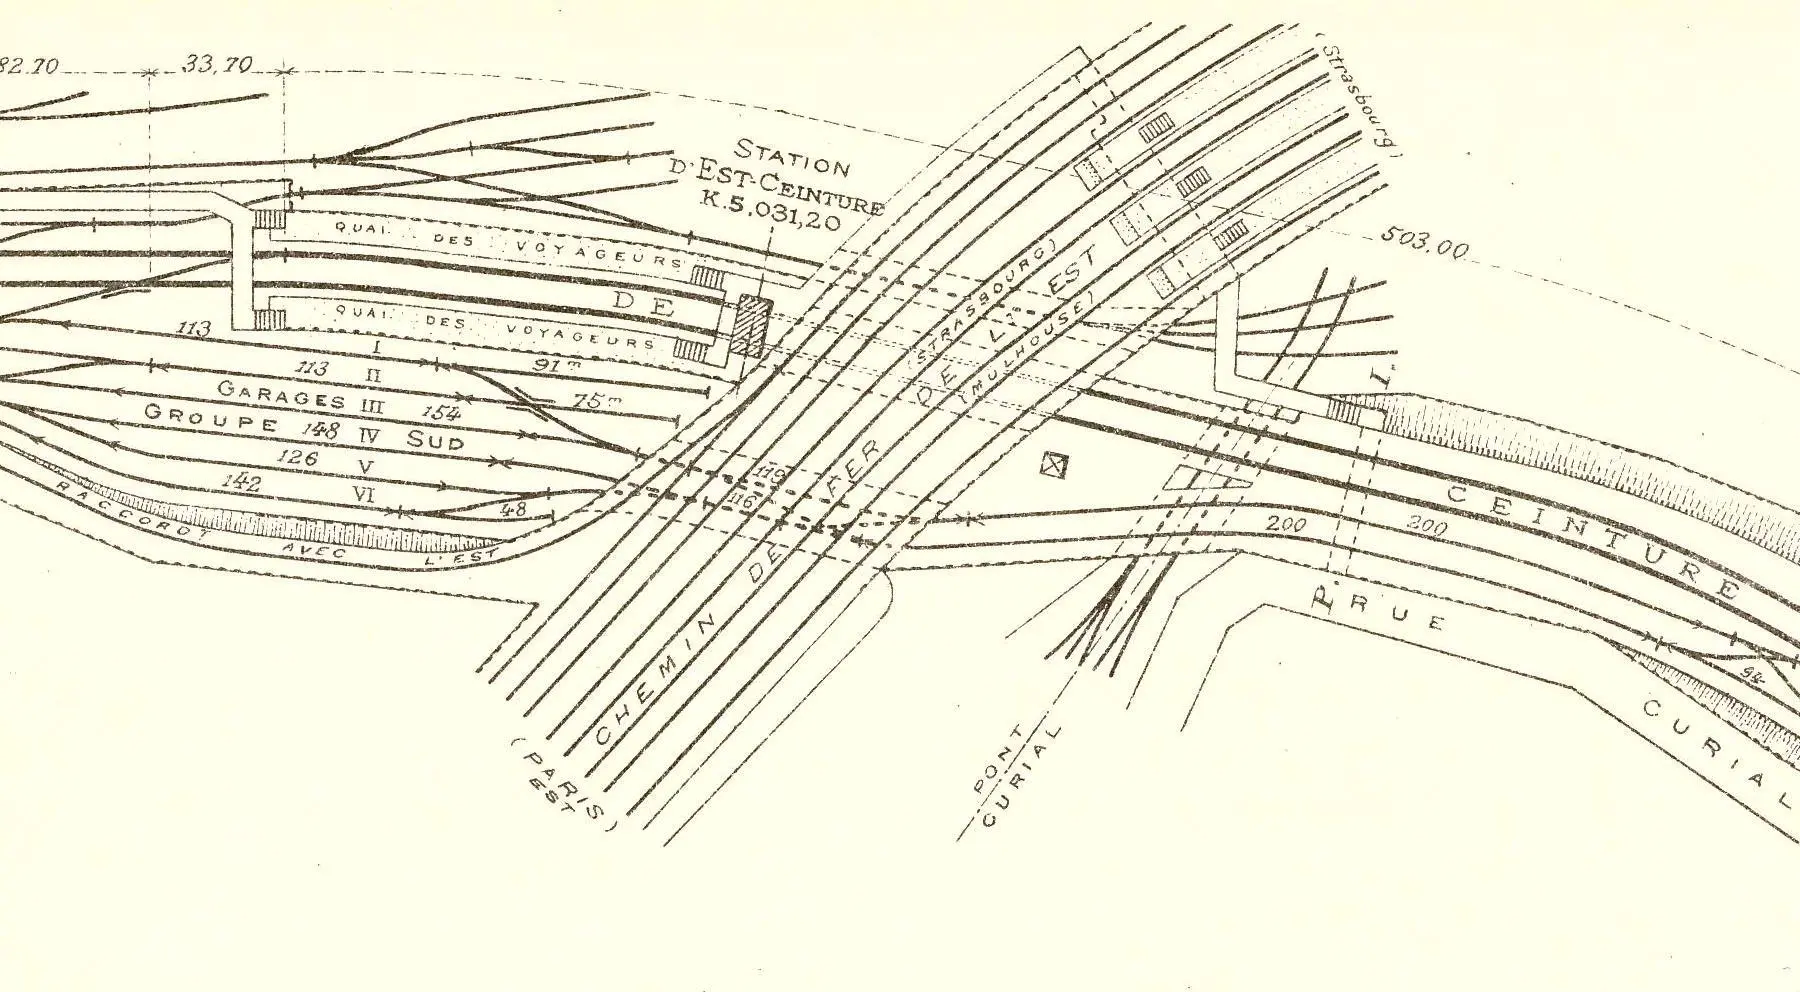 Plan des installations de la station Est-Ceinture en 1914 